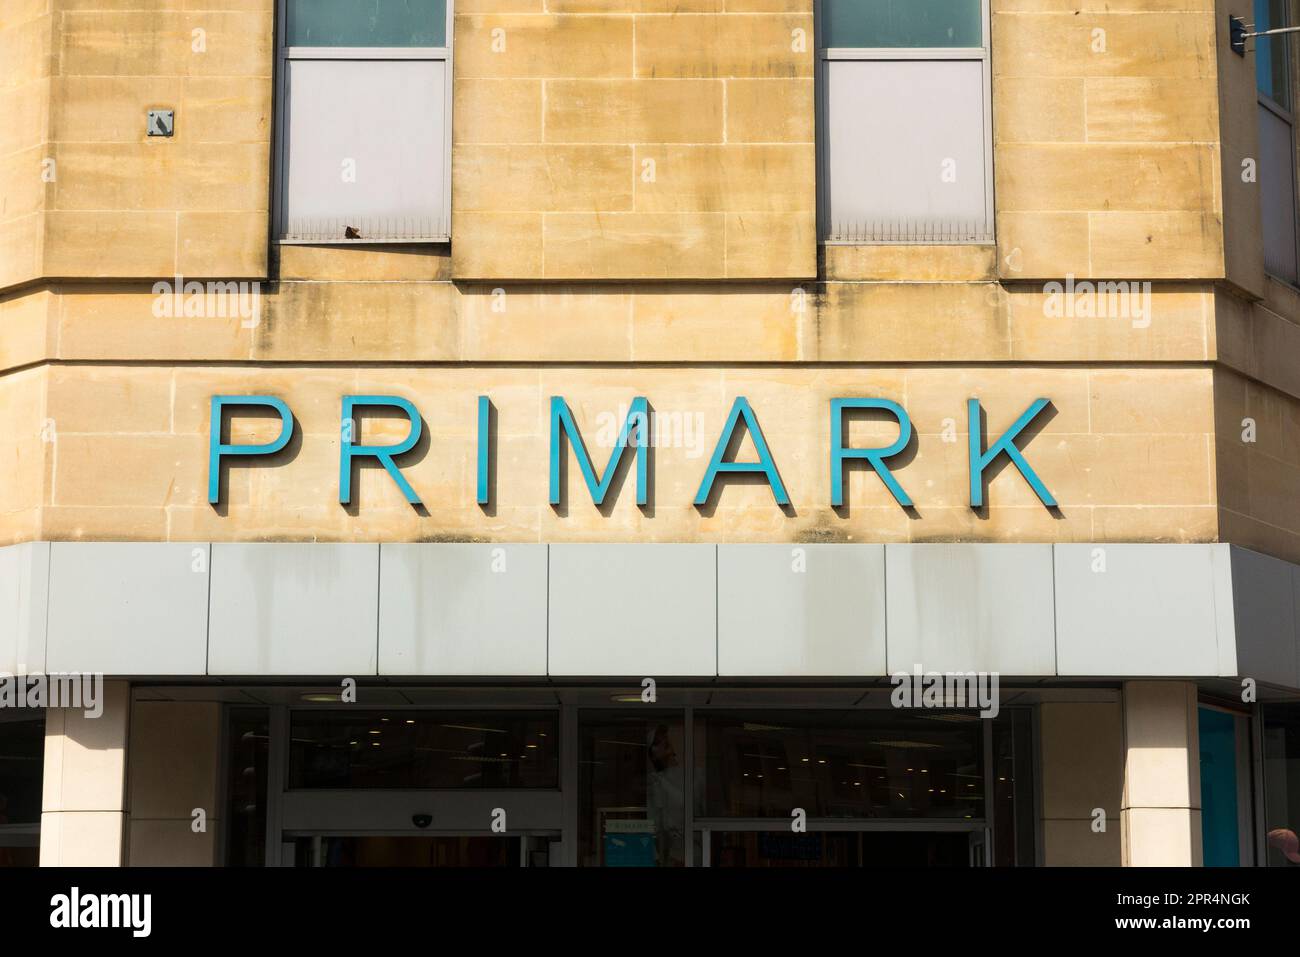 Letrero de la tienda Primark en la fachada de una tienda / entrada de un  outlet en la zona comercial del centro de la ciudad de la calle principal.  Balneario Cheltenham. Gloucestershire.